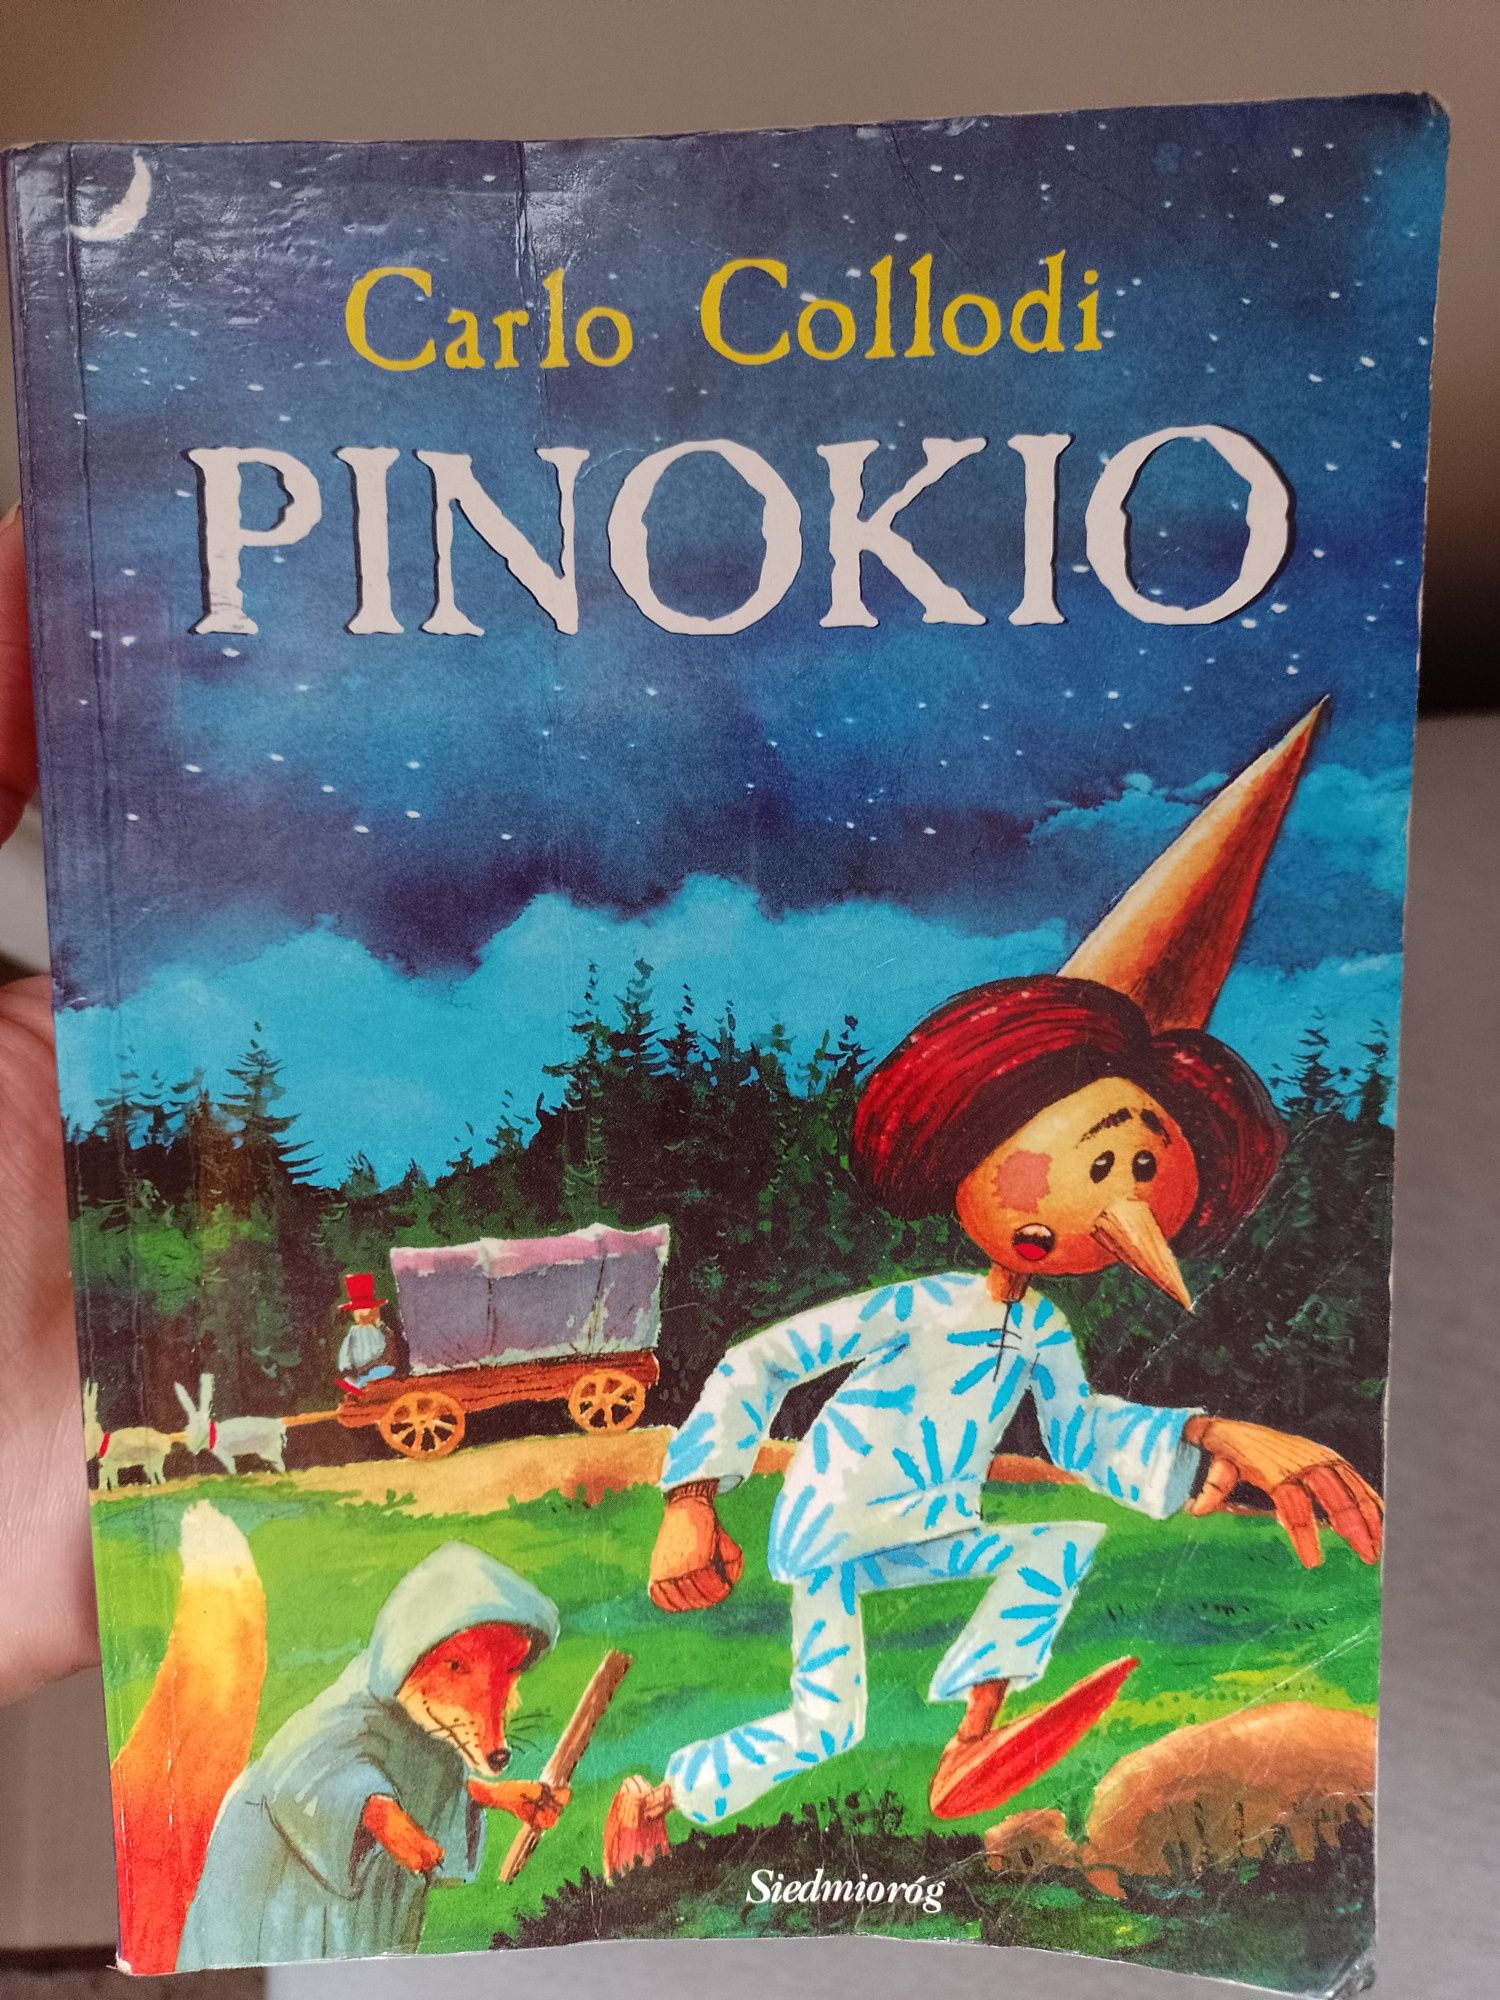 Książka pt. "Pinokio"